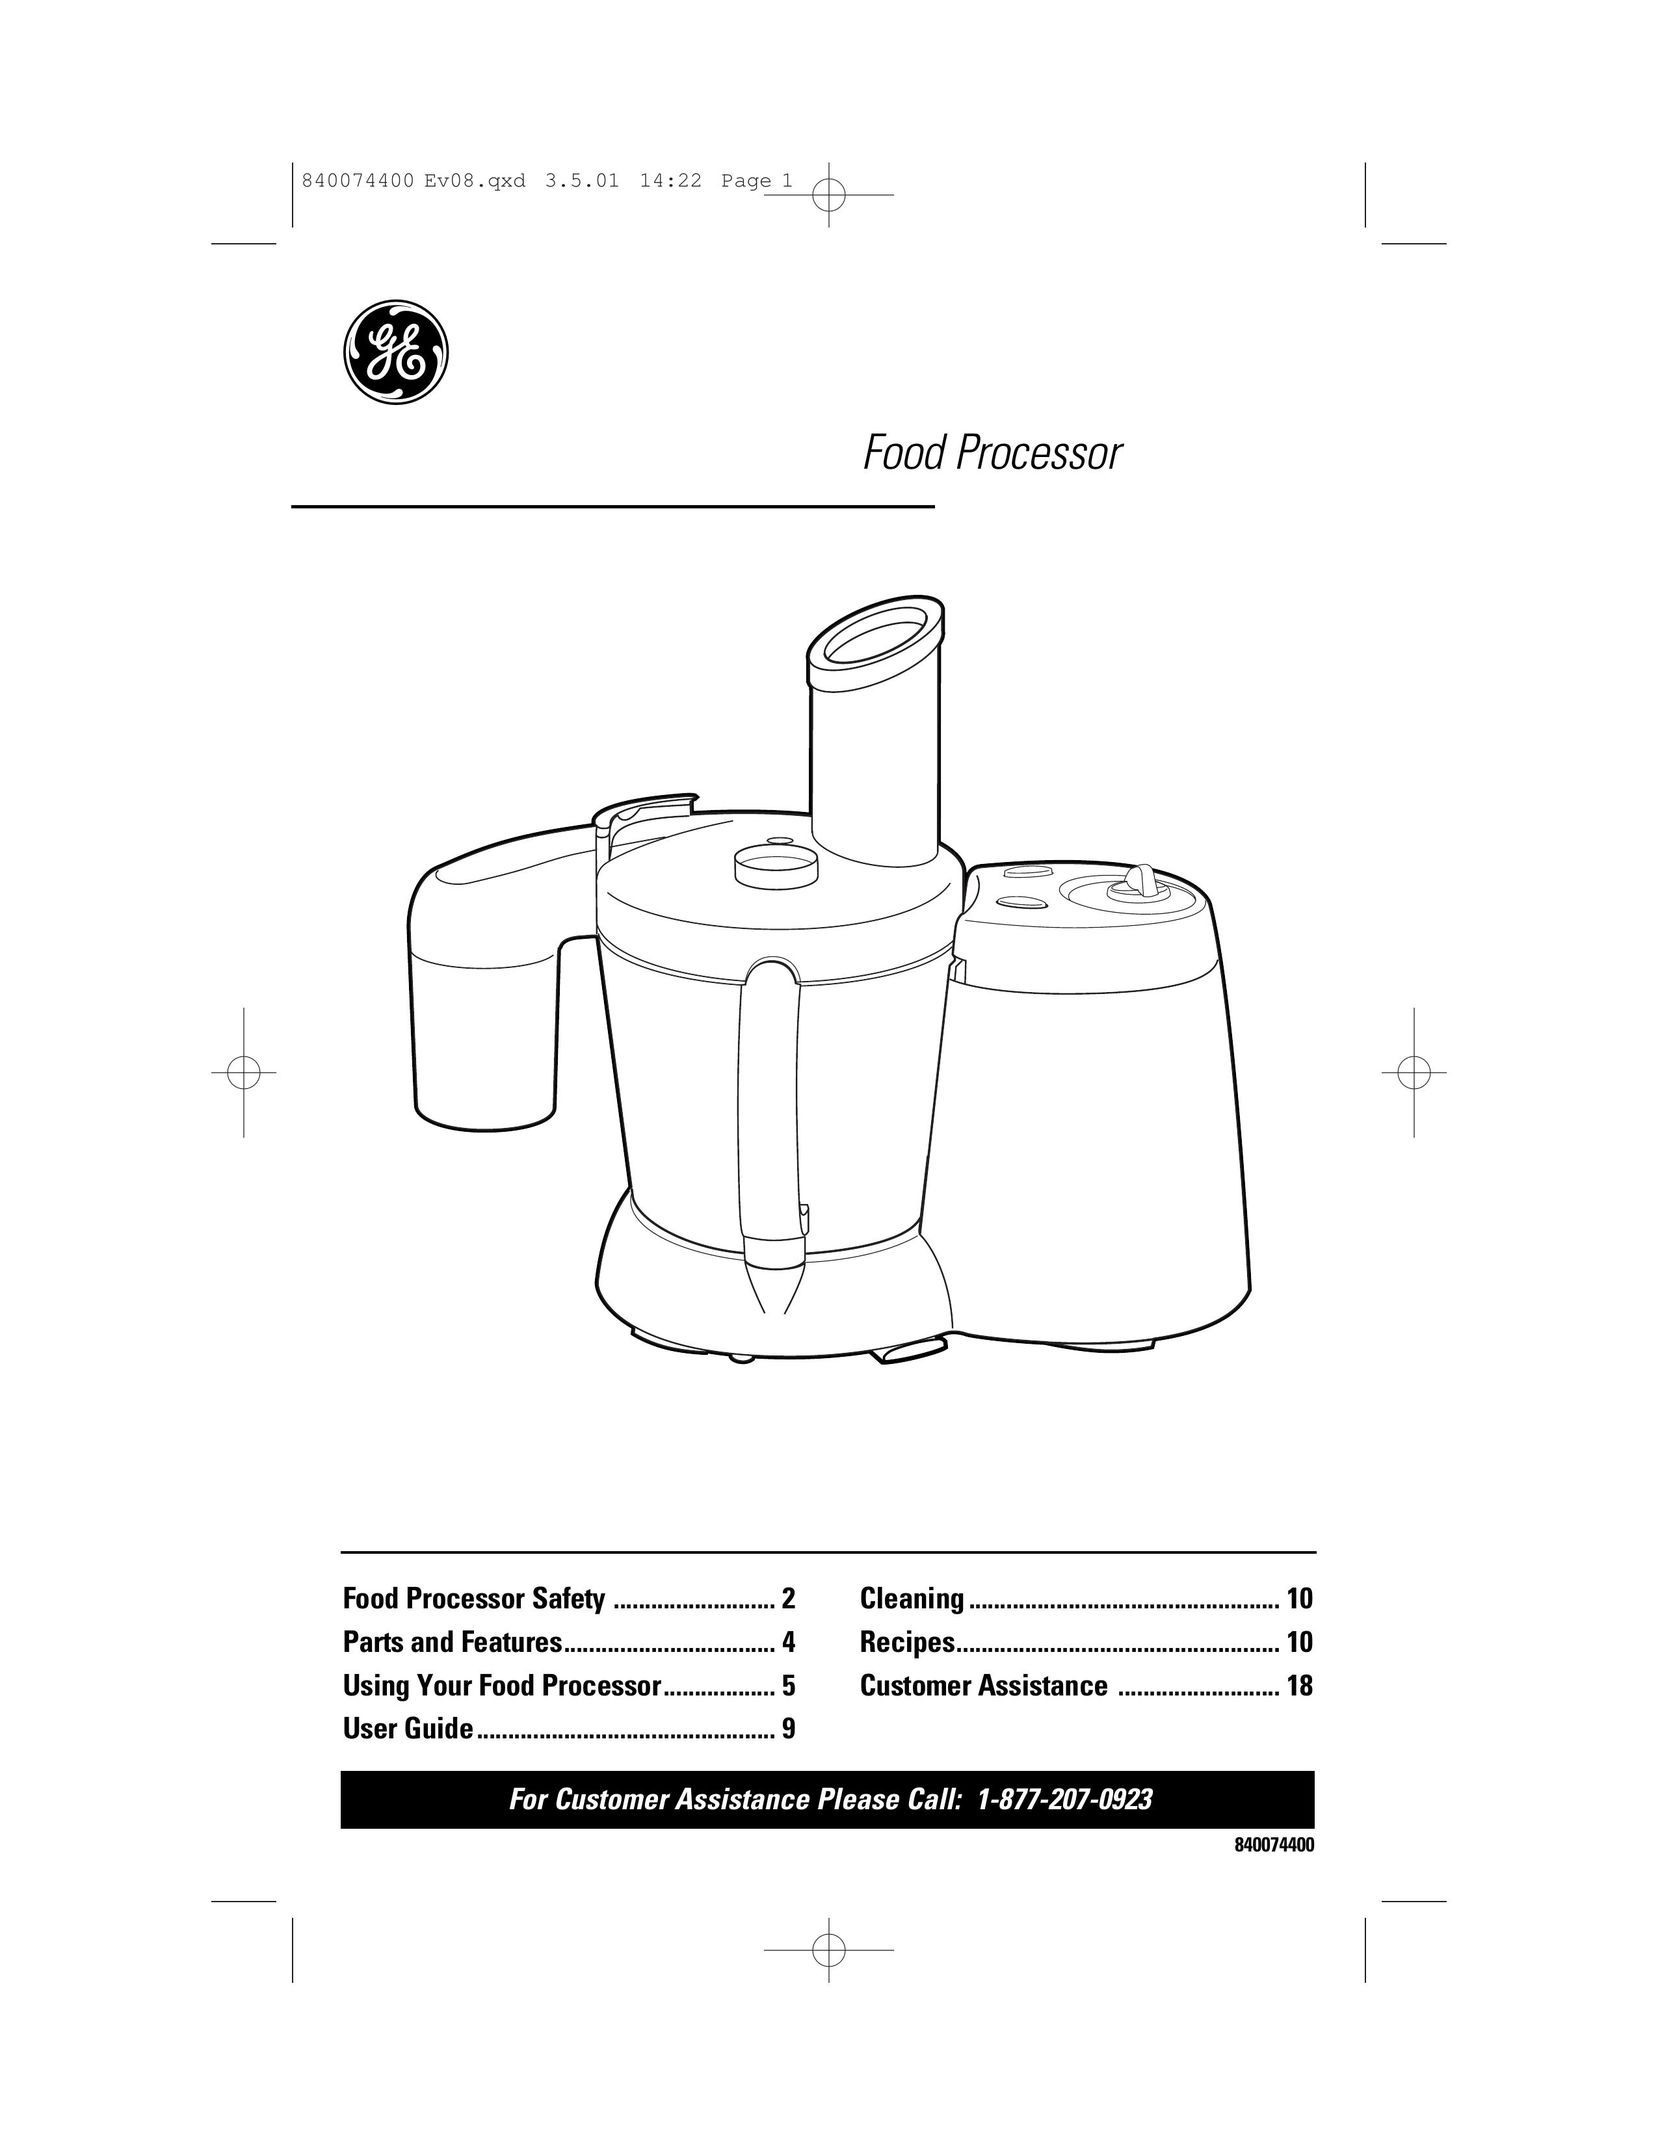 GE 840074400 Food Processor User Manual